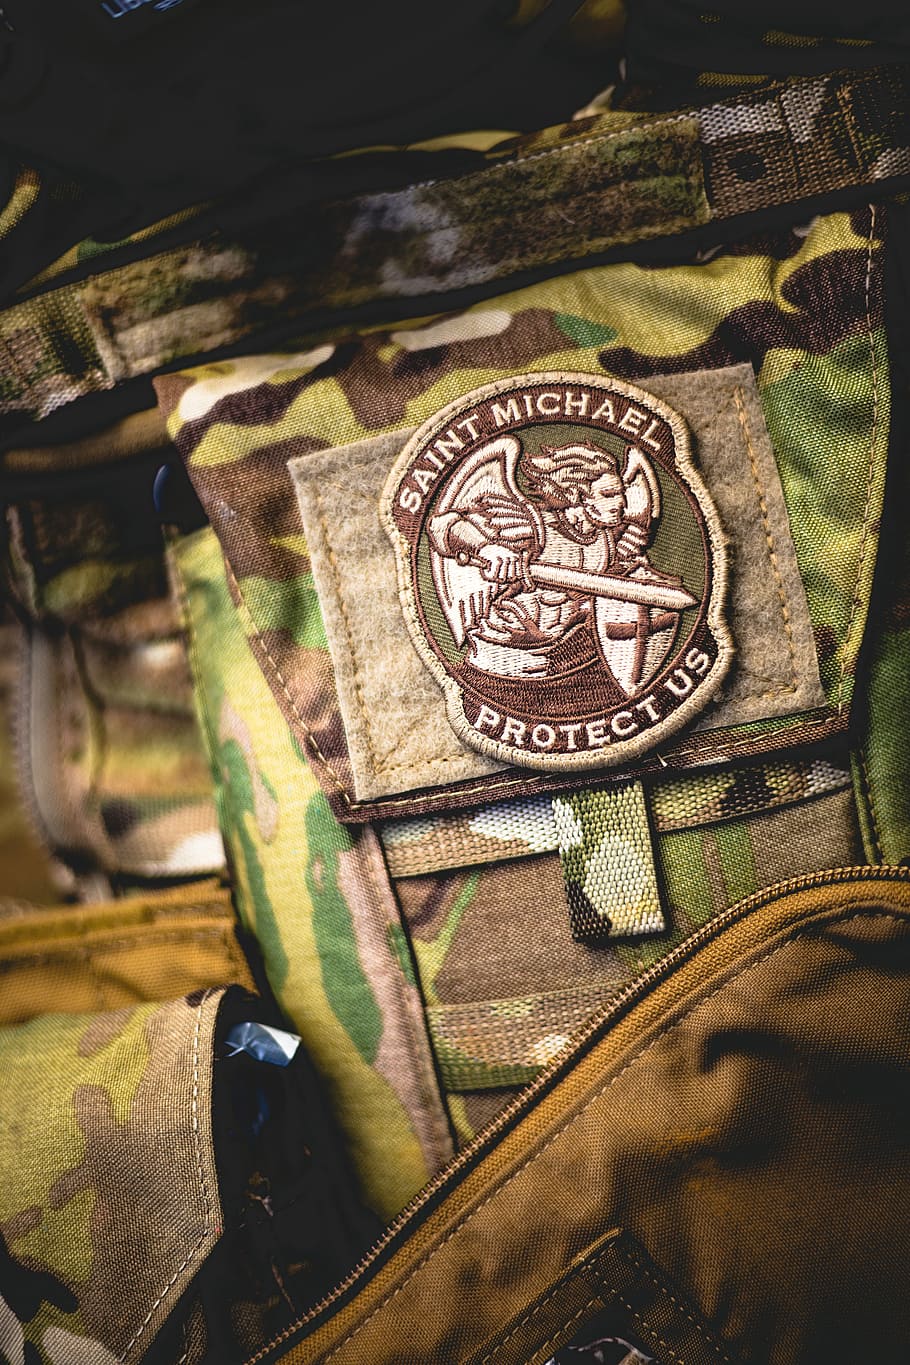 Saint Michael Protectus patch, Saint Michael badge, military